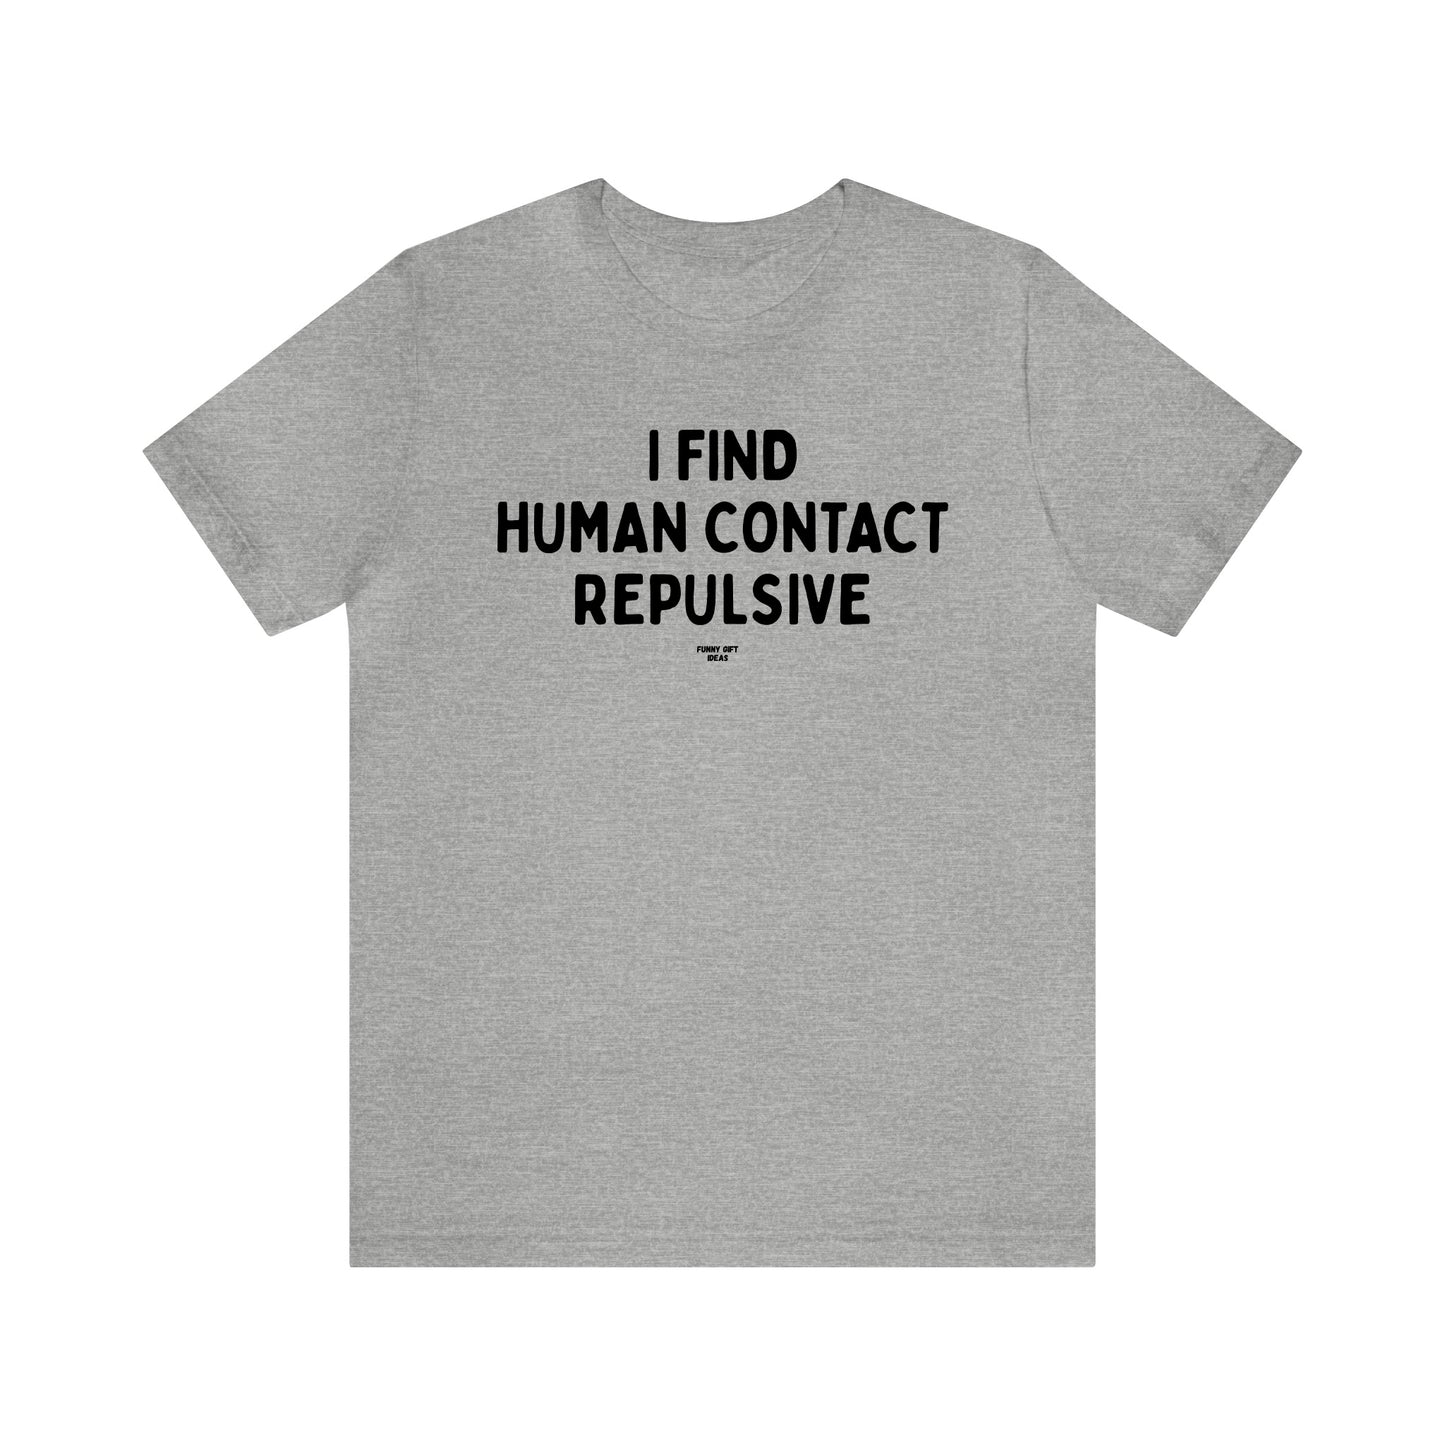 Mens T Shirts - I Find Human Contact Repulsive - Funny Men T Shirts